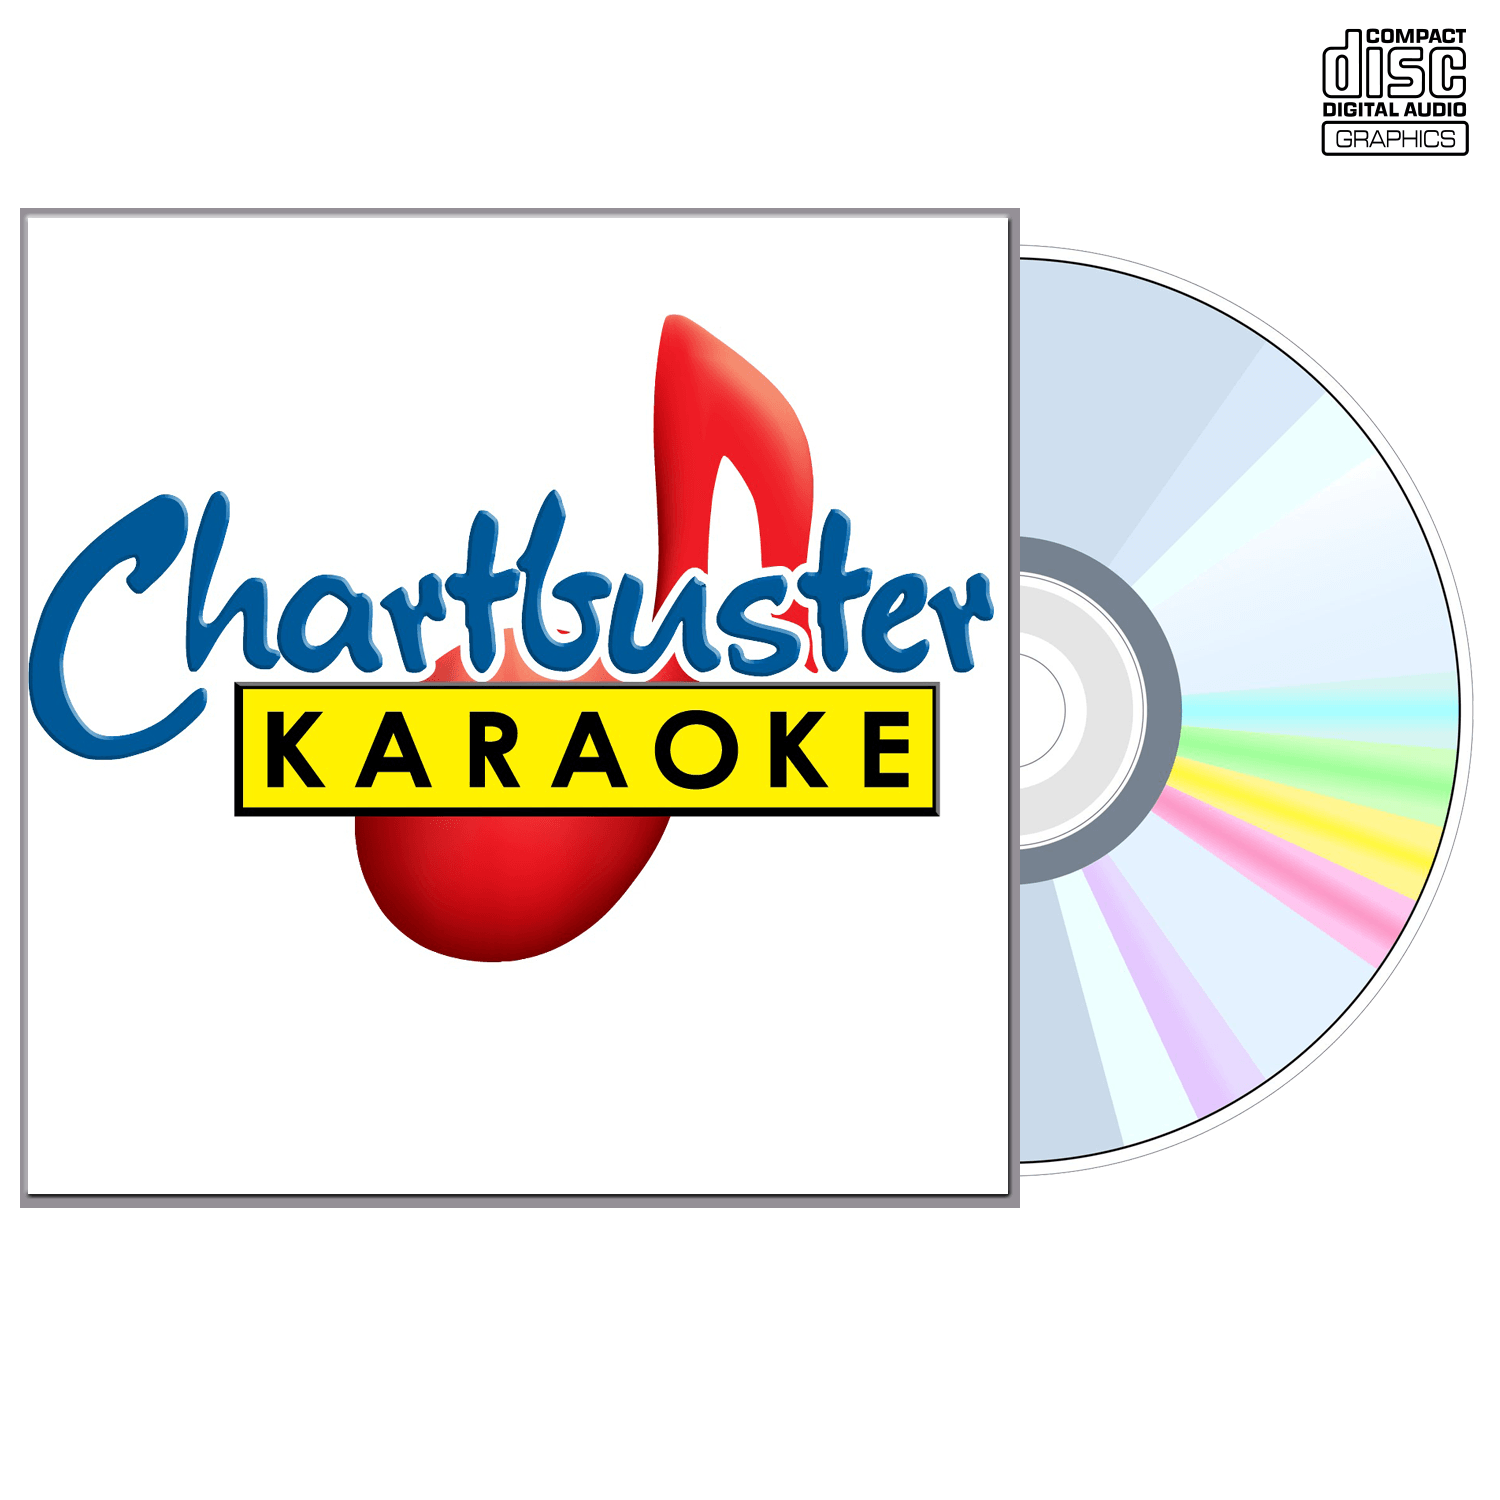 Elvis Presley Vol 3 - CD+G - Chartbuster Karaoke - Karaoke Home Entertainment